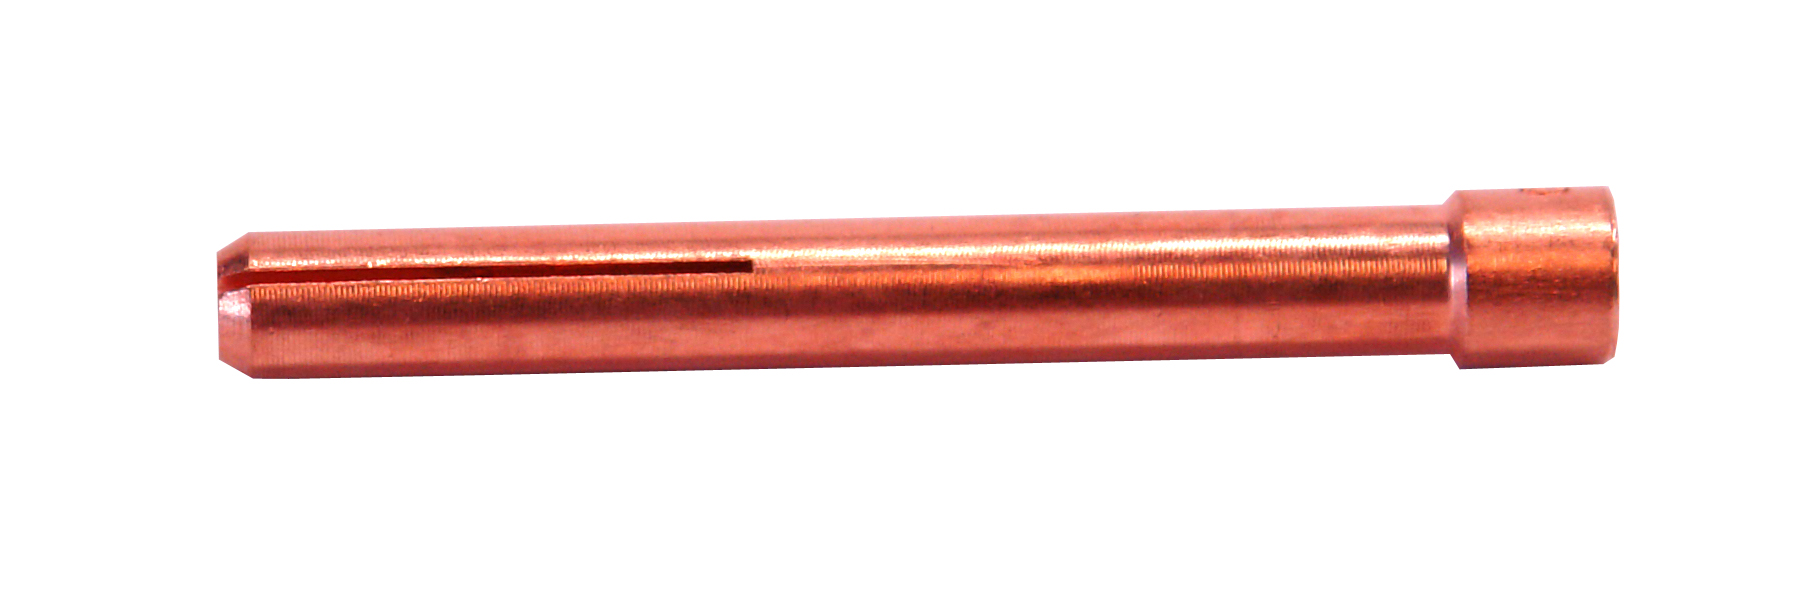 Weldmark by CK Worldwide 10N22 Standard Copper Collet 1/25 (0.040)